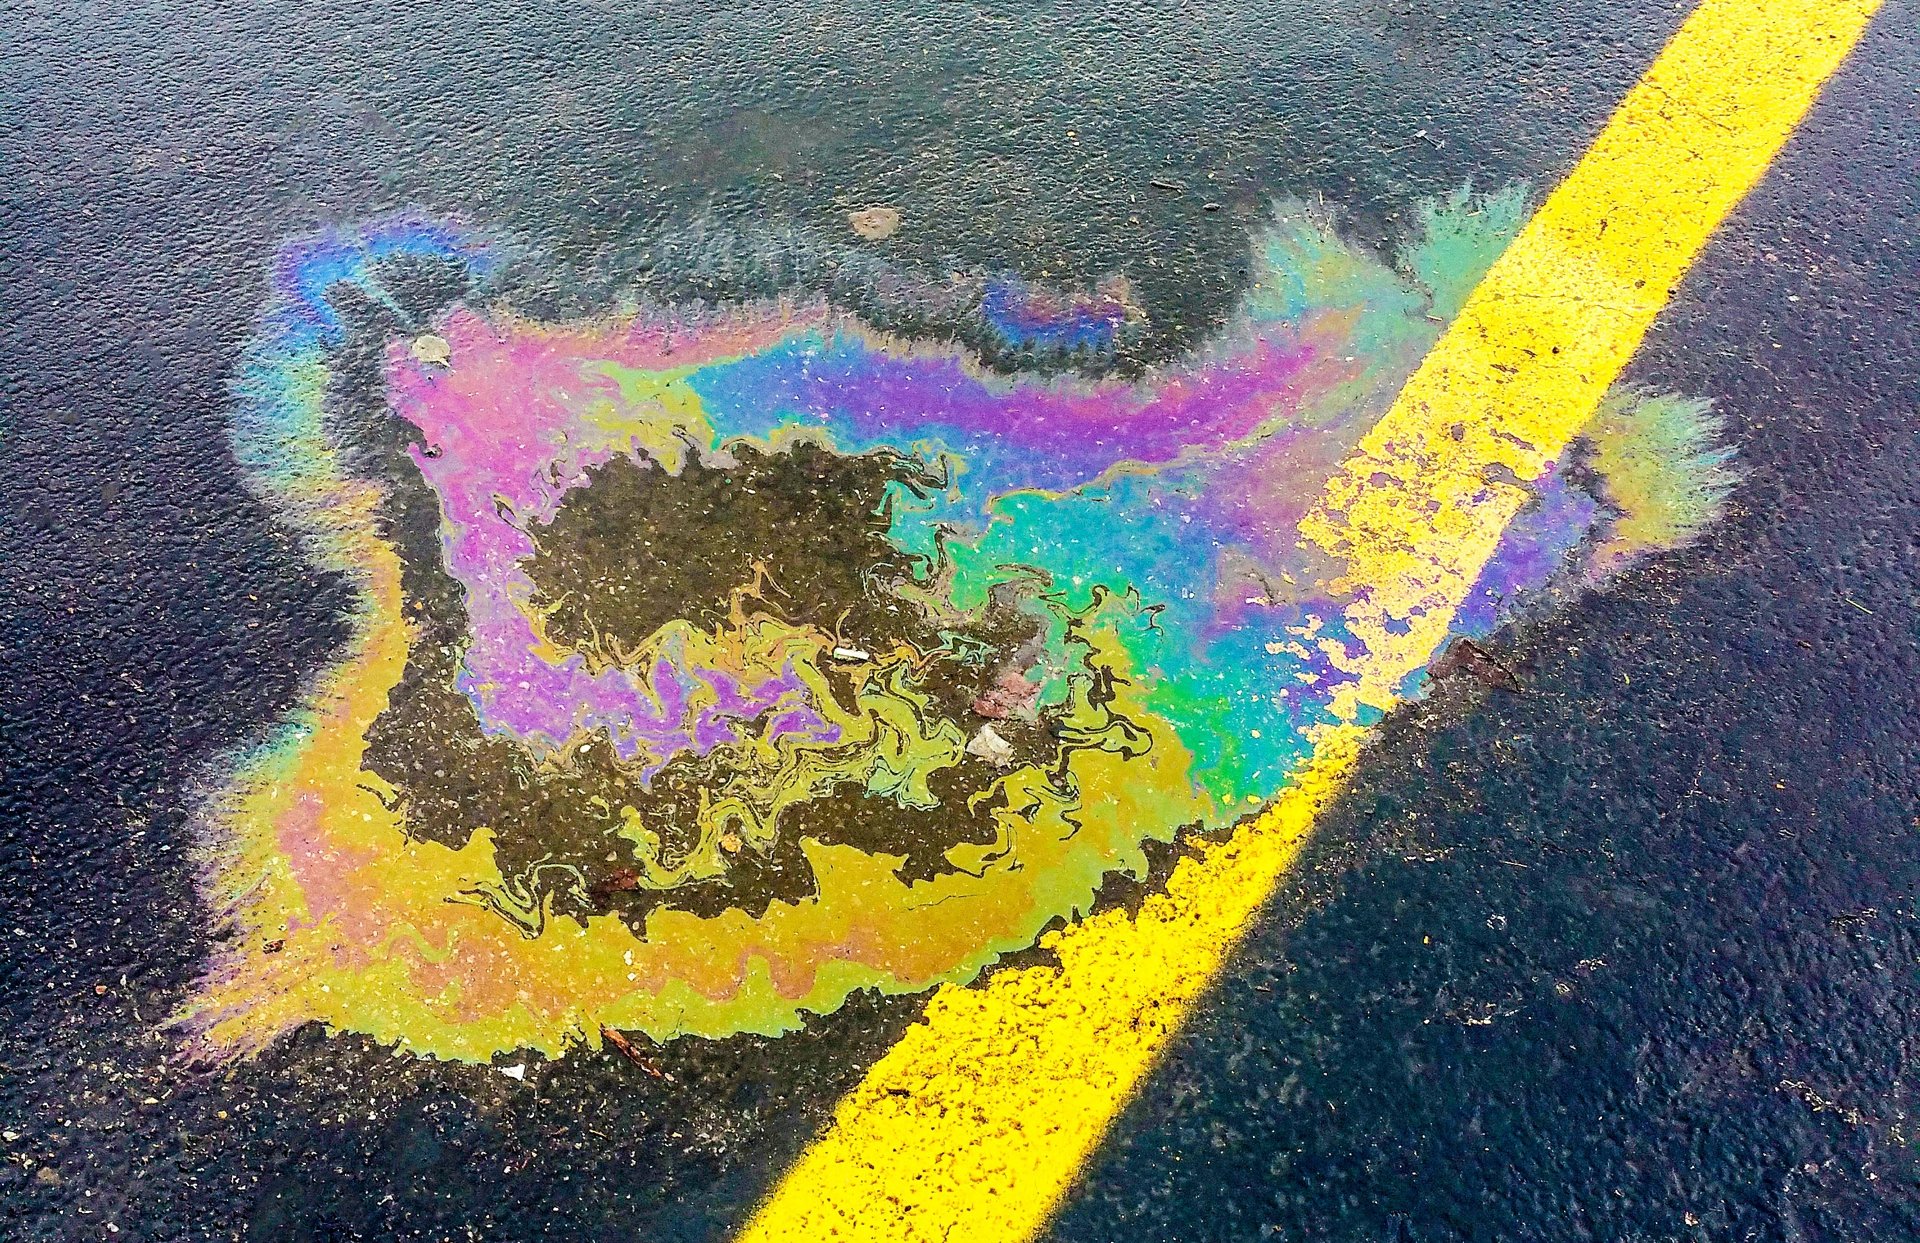 SPCC Plan Prevents Oil Spill